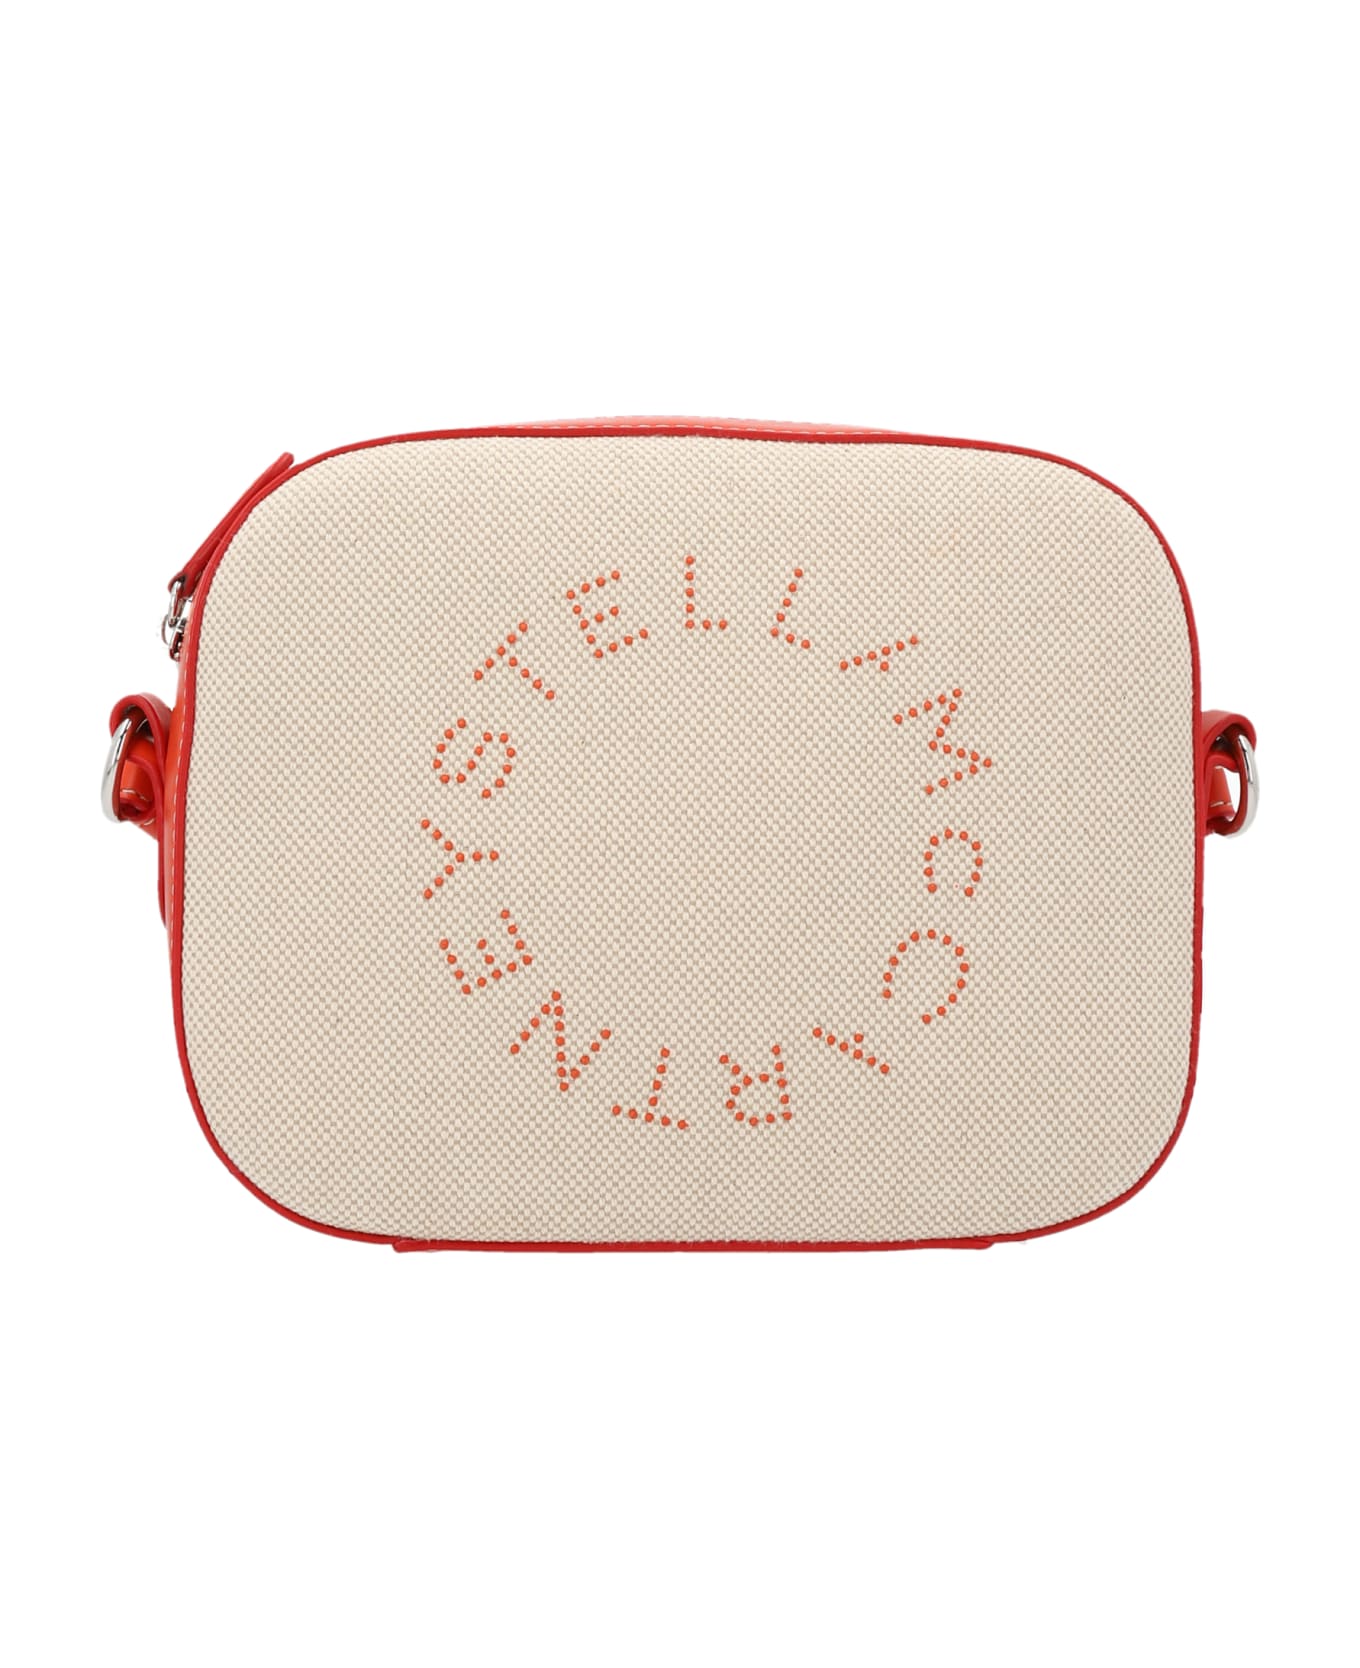 Stella McCartney Camera Shoulder Bag - Red